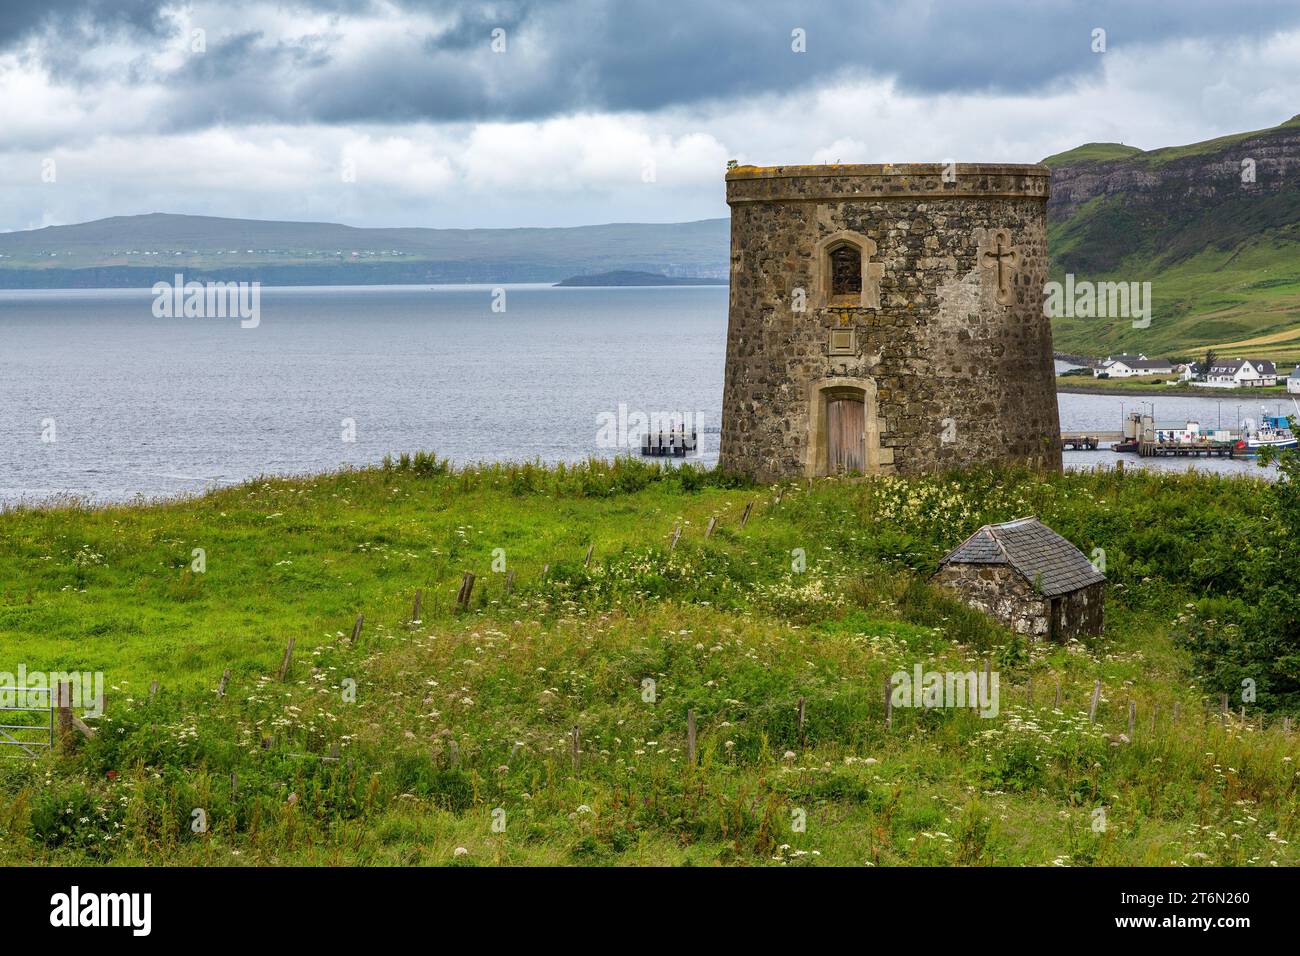 Baie d'UIG, avec la Tour Uig, une folie du 19e siècle. et le village au-delà. Île de Skye, Highlands d'Écosse. Banque D'Images